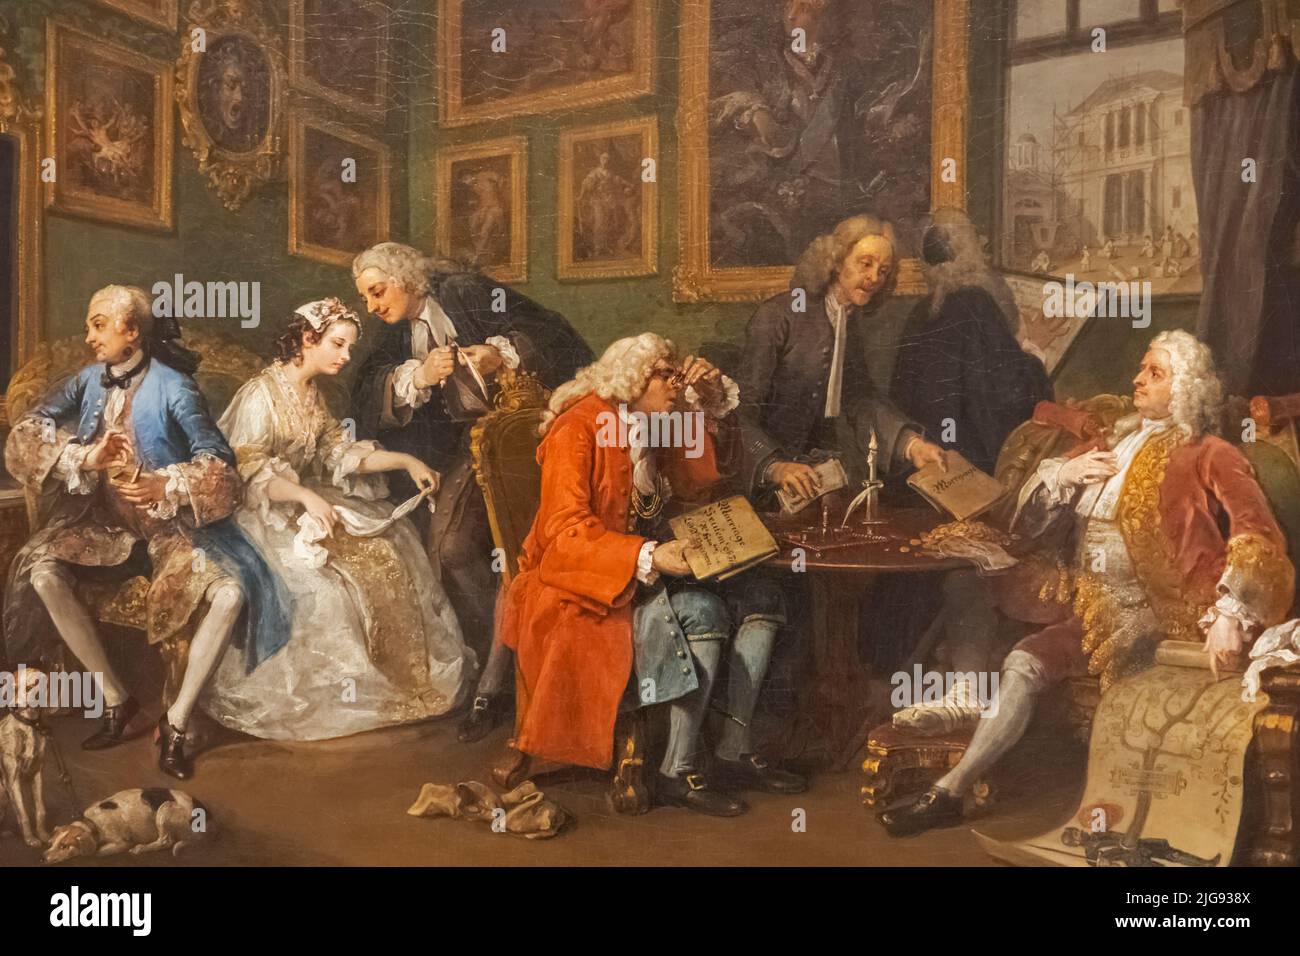 Dipinto della serie Marriage A-la-Mode intitolato 'The Marriage Settlement' di William Hogarth datato 1743 Foto Stock